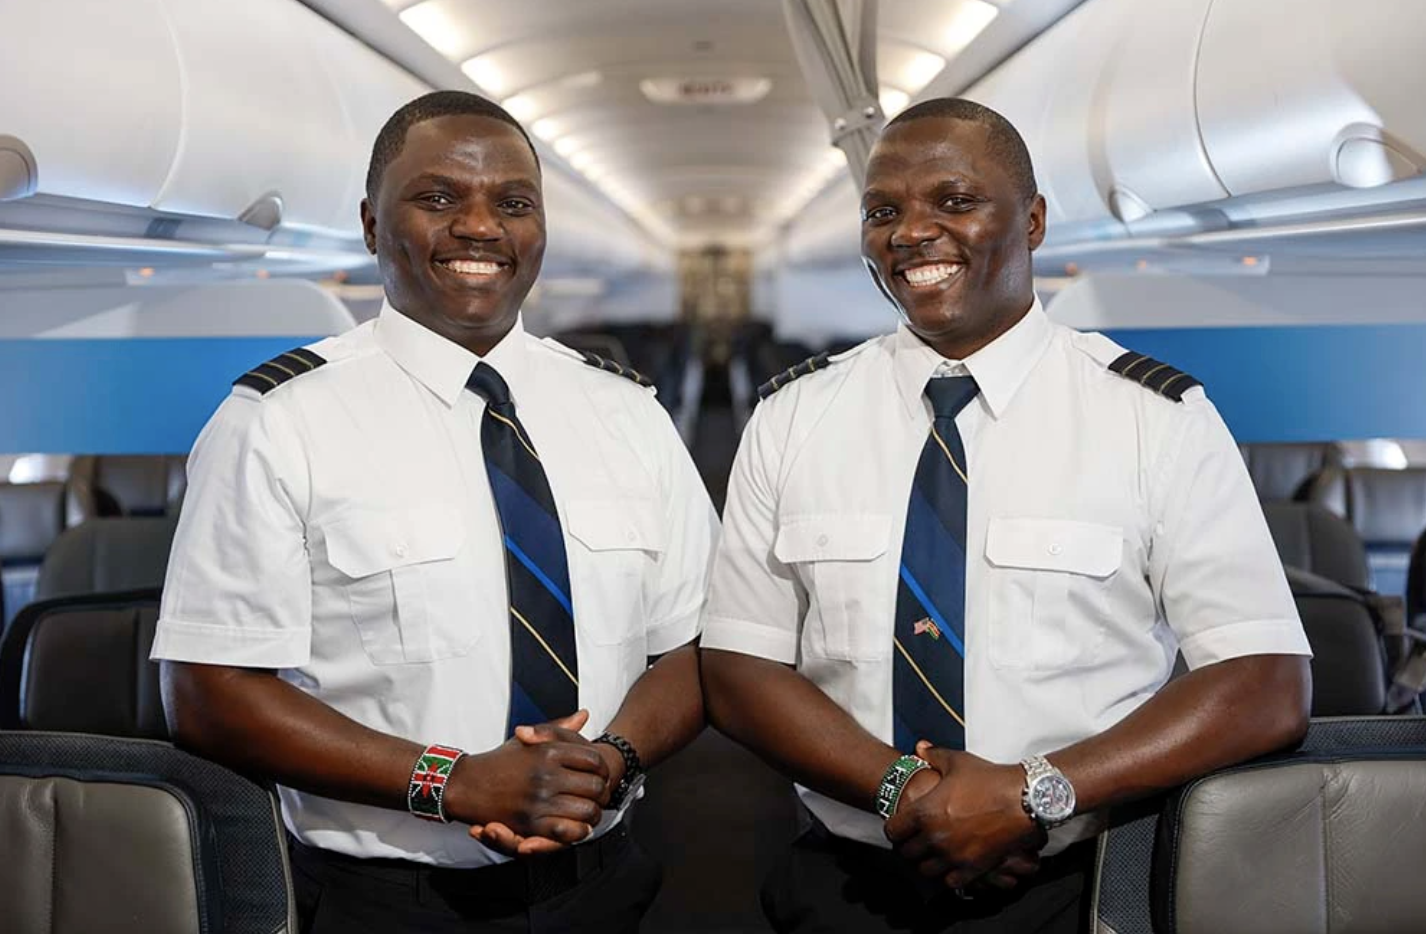 Black Excellence: Conoce a los hermanos gemelos idénticos que son pilotos de Alaska Airlines – Travel Noire